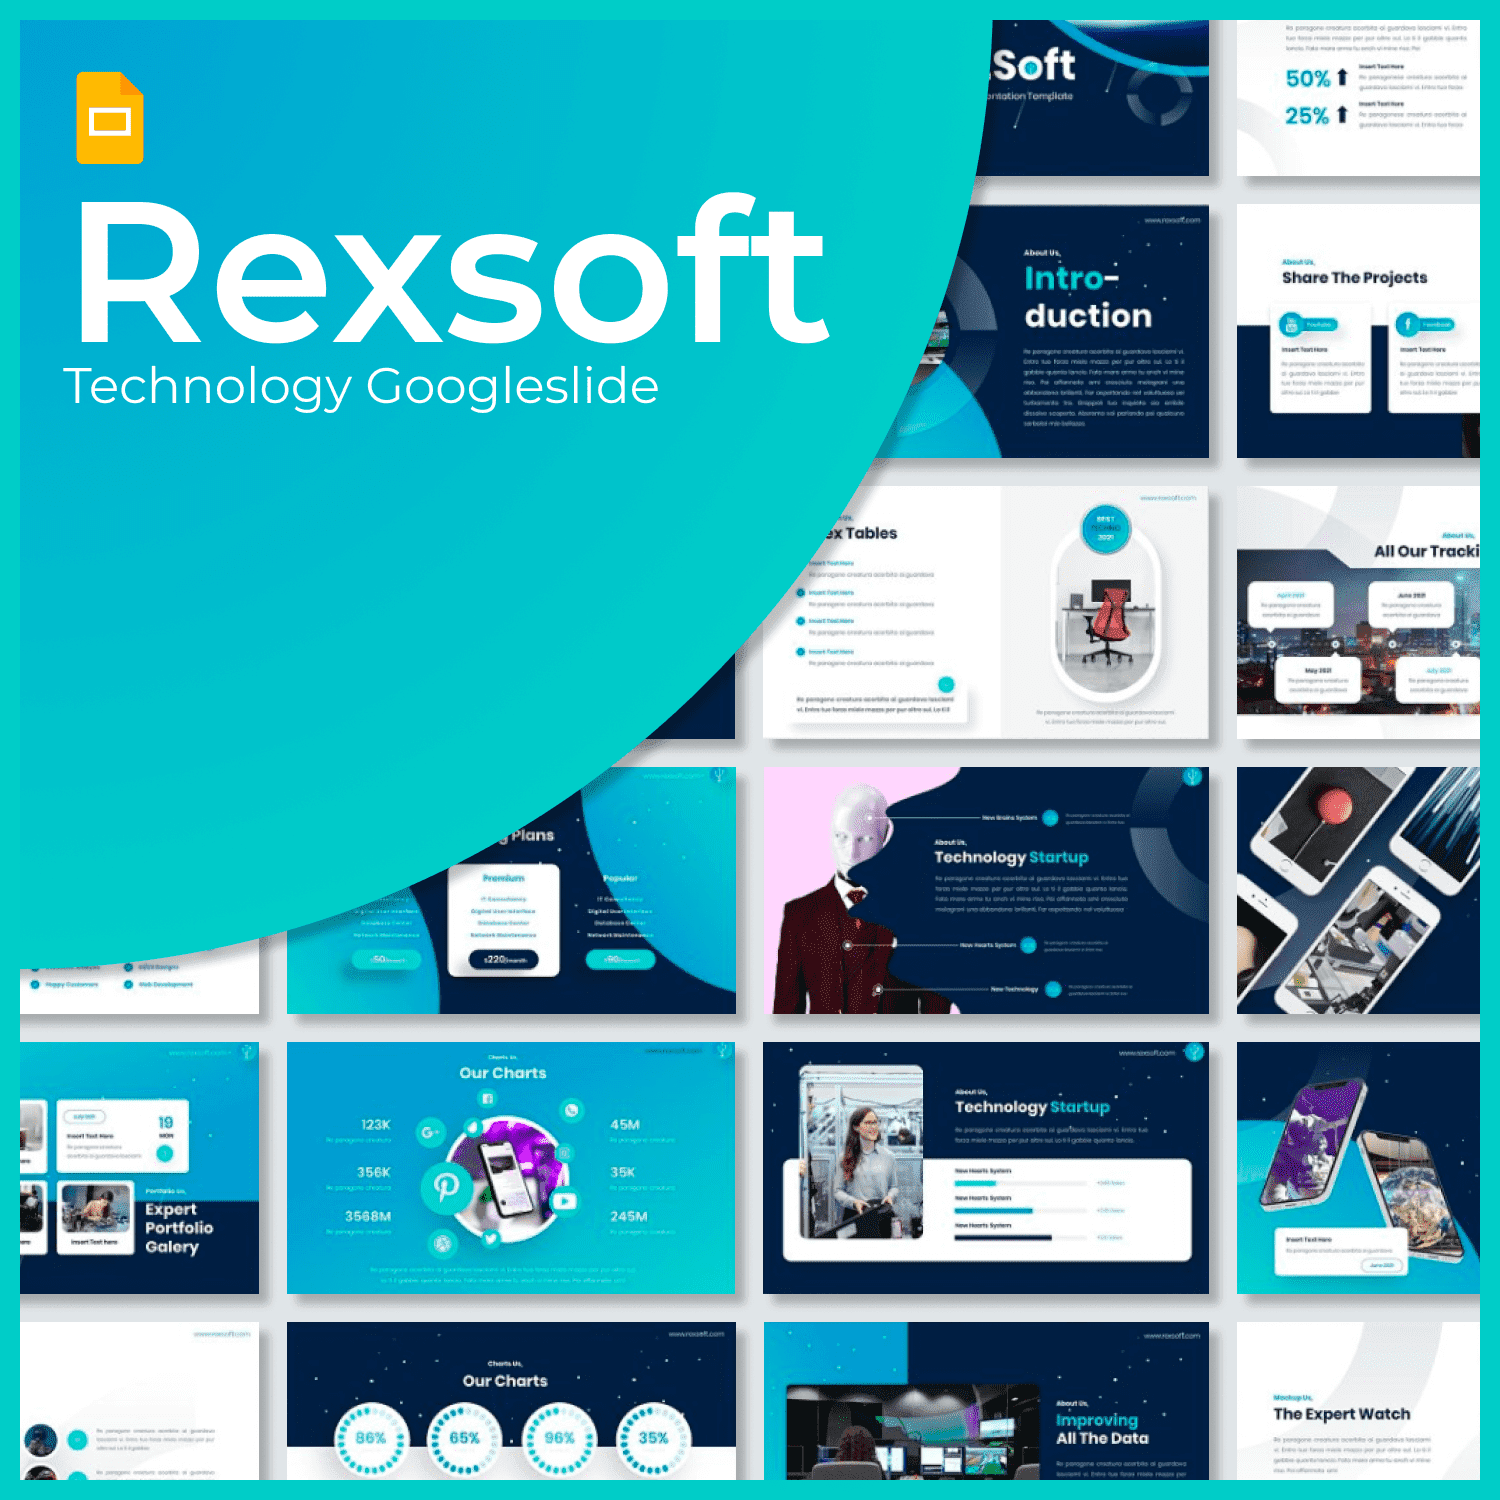 Rexsoft Technology Googleslide main cover.